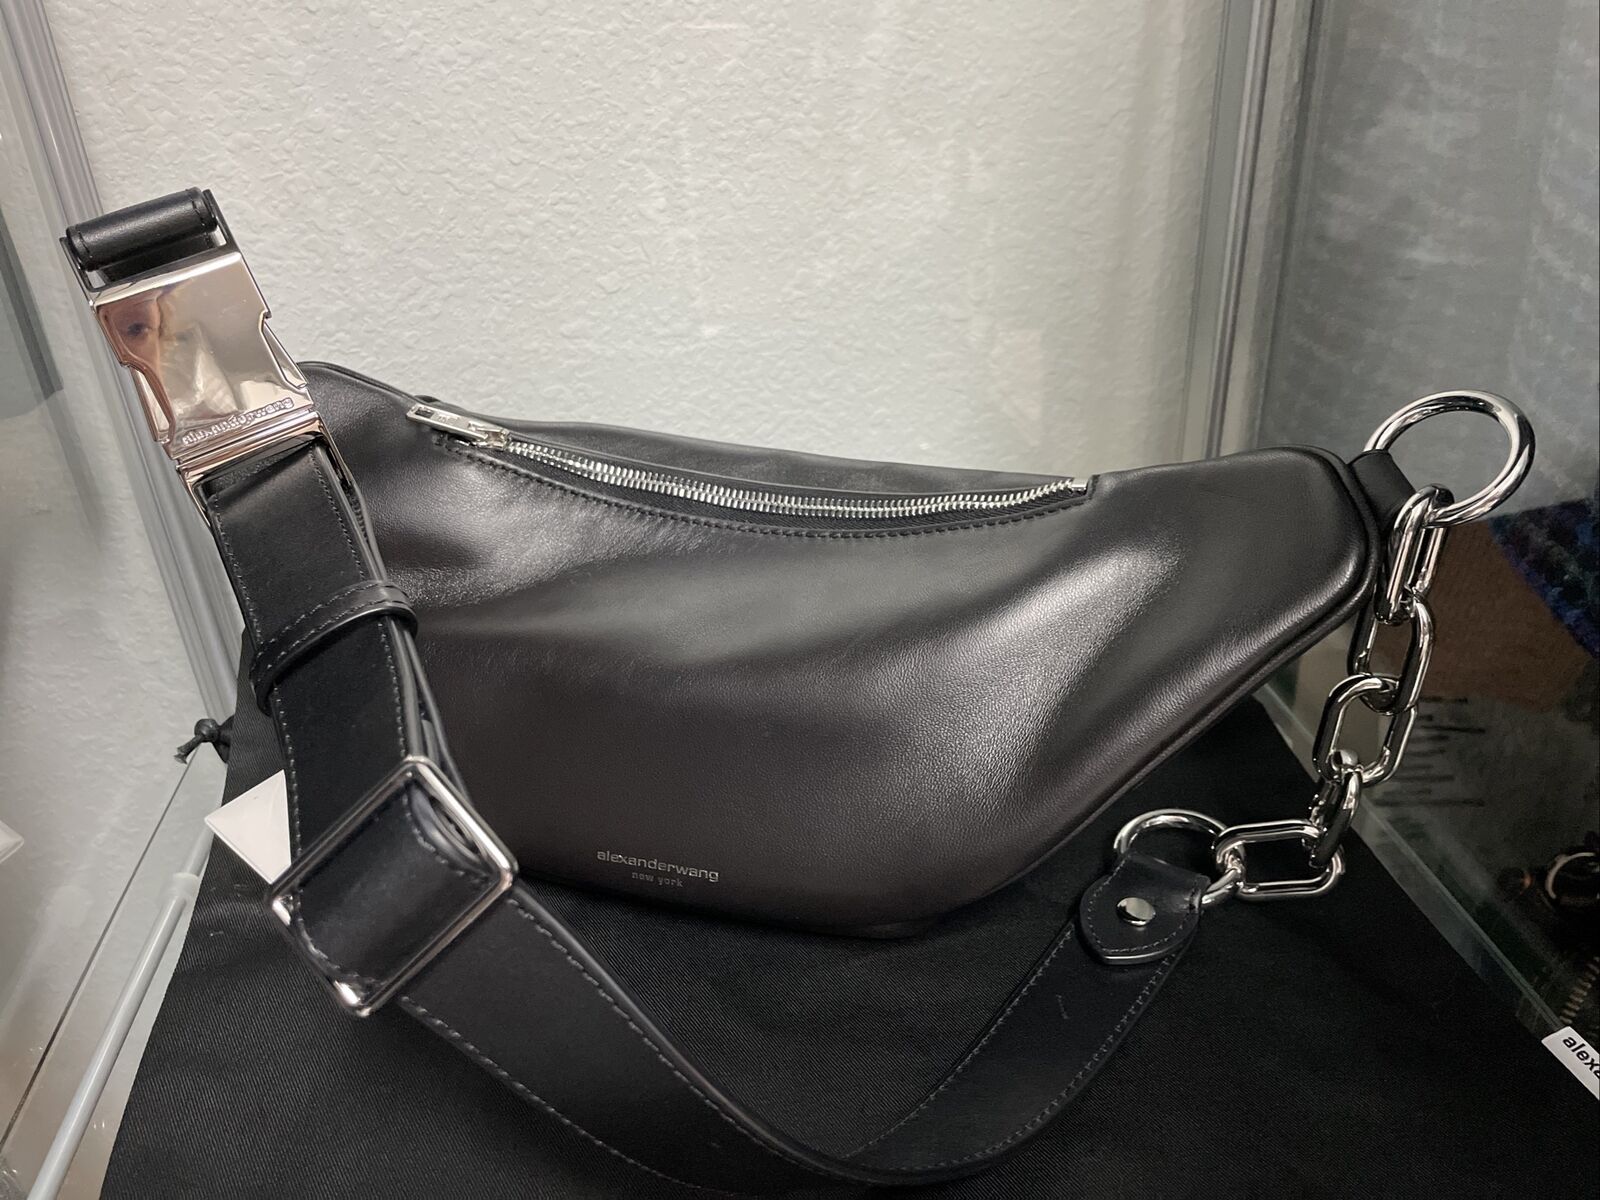 Alexander Wang Attica Soft Fanny Pack Designer Black Leather belt